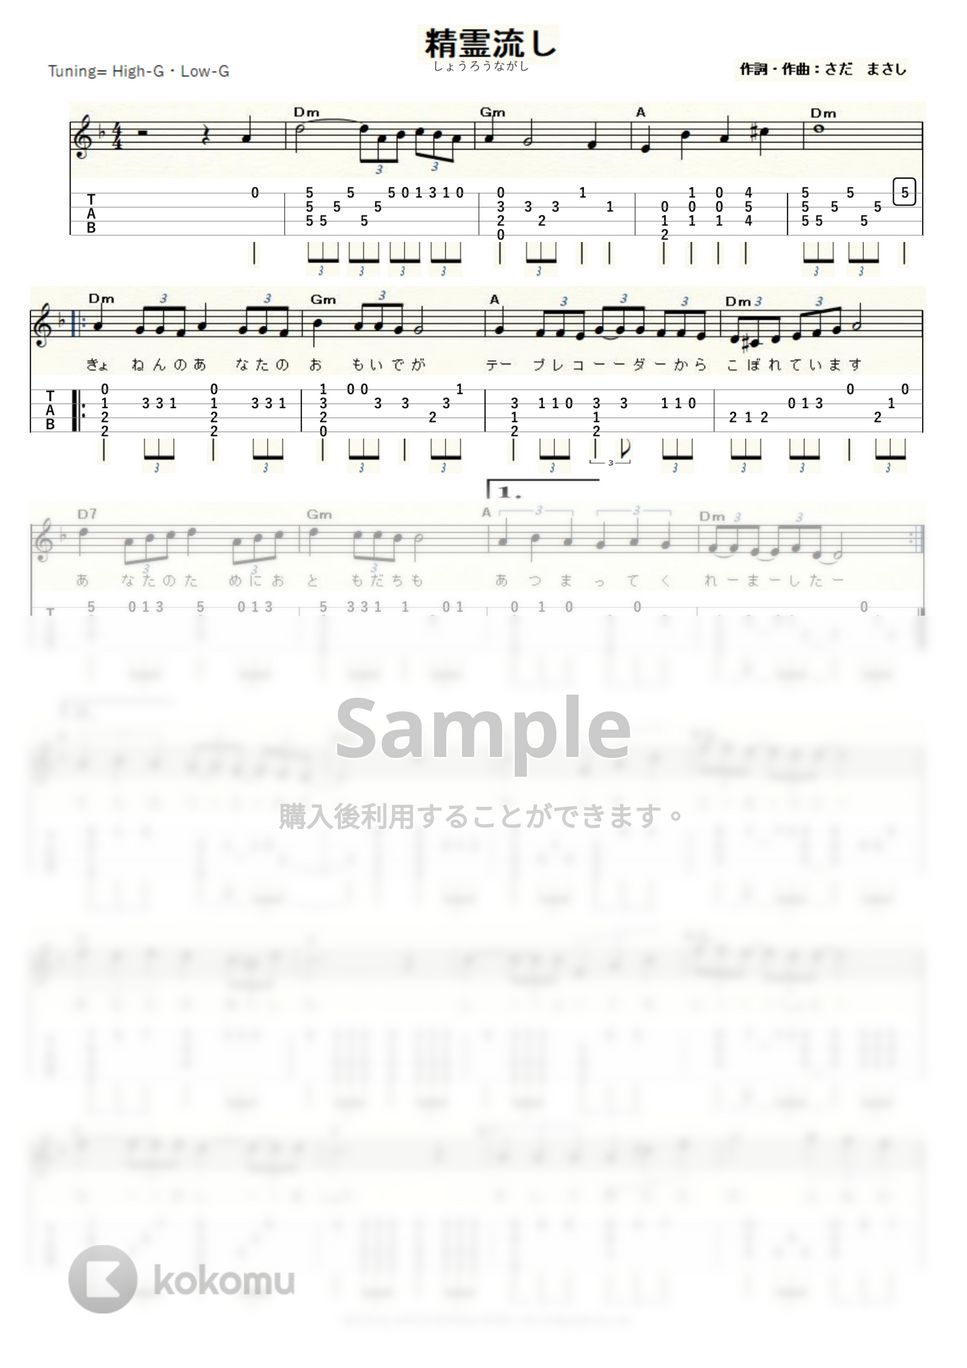 グレープ - 精霊流し (ｳｸﾚﾚｿﾛ / High-G,Low-G / 中級) by ukulelepapa